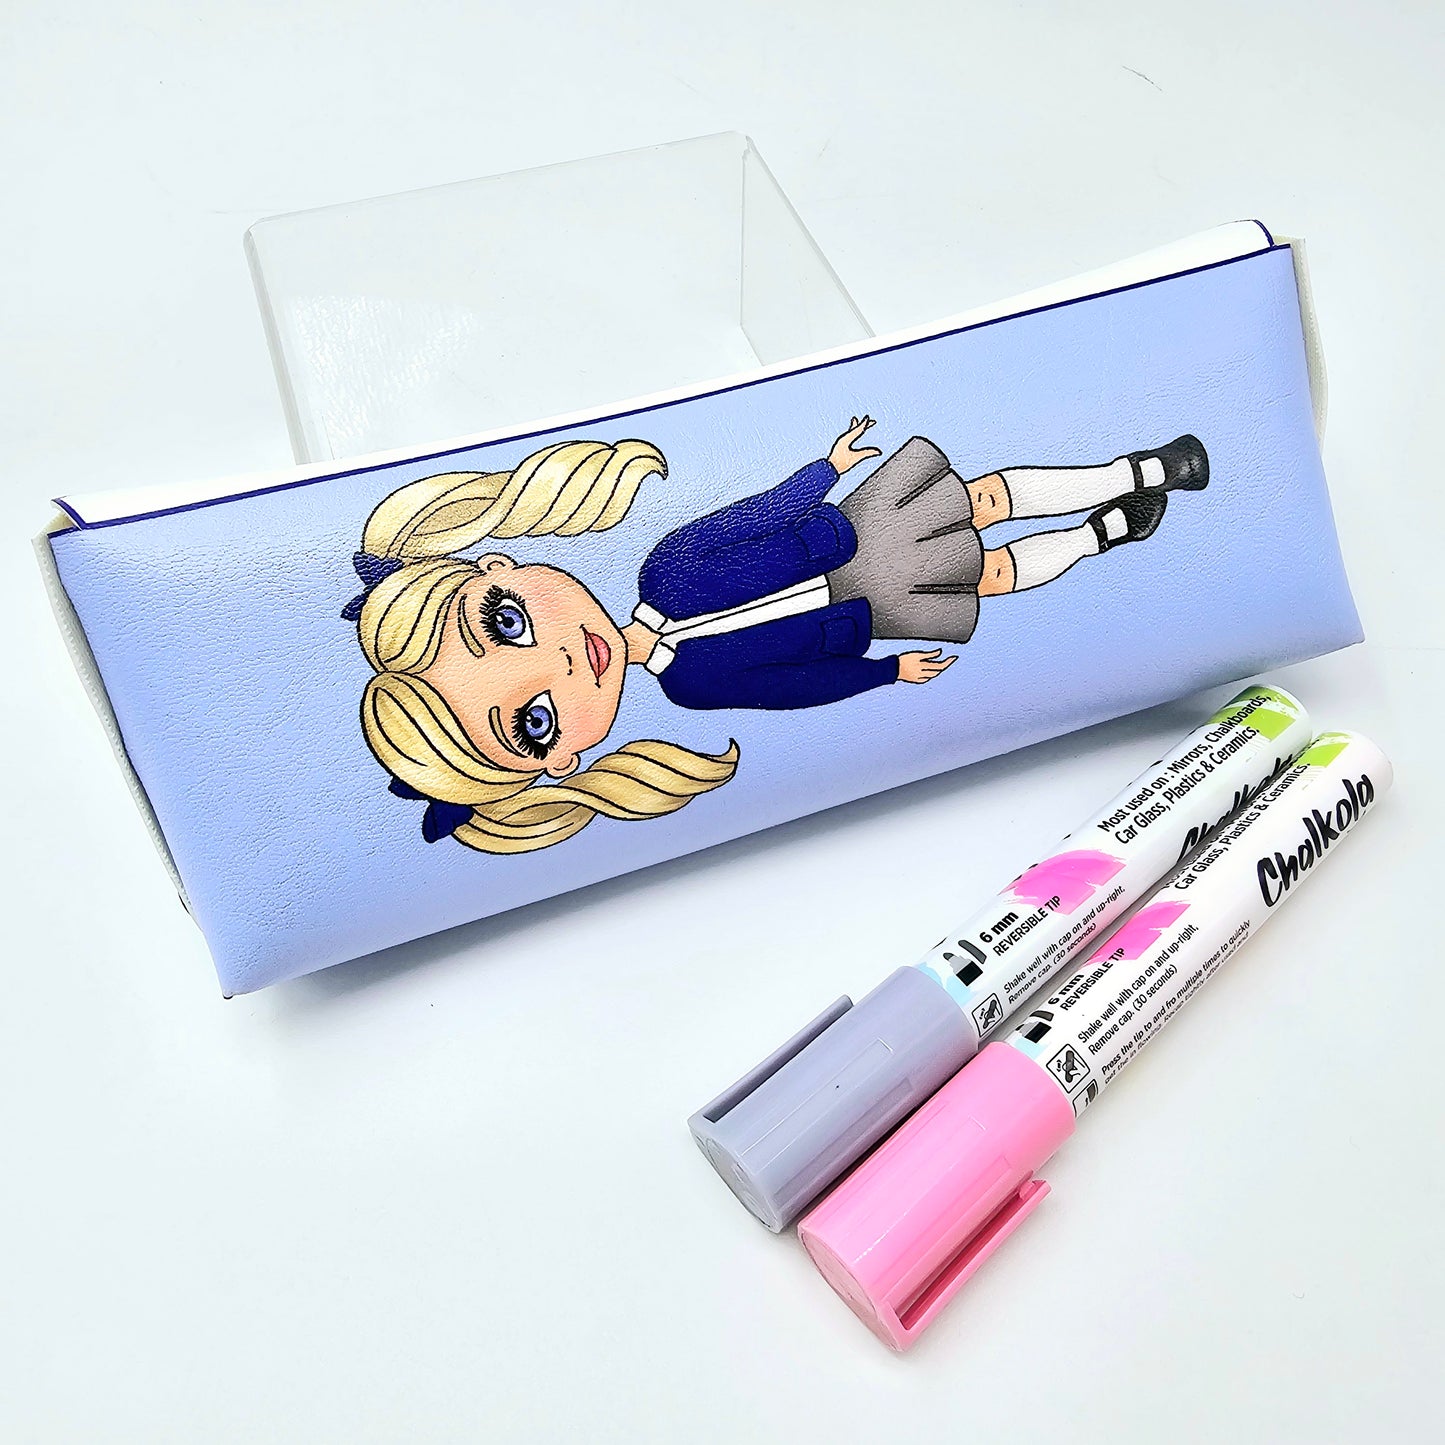 Personalised School pencil case